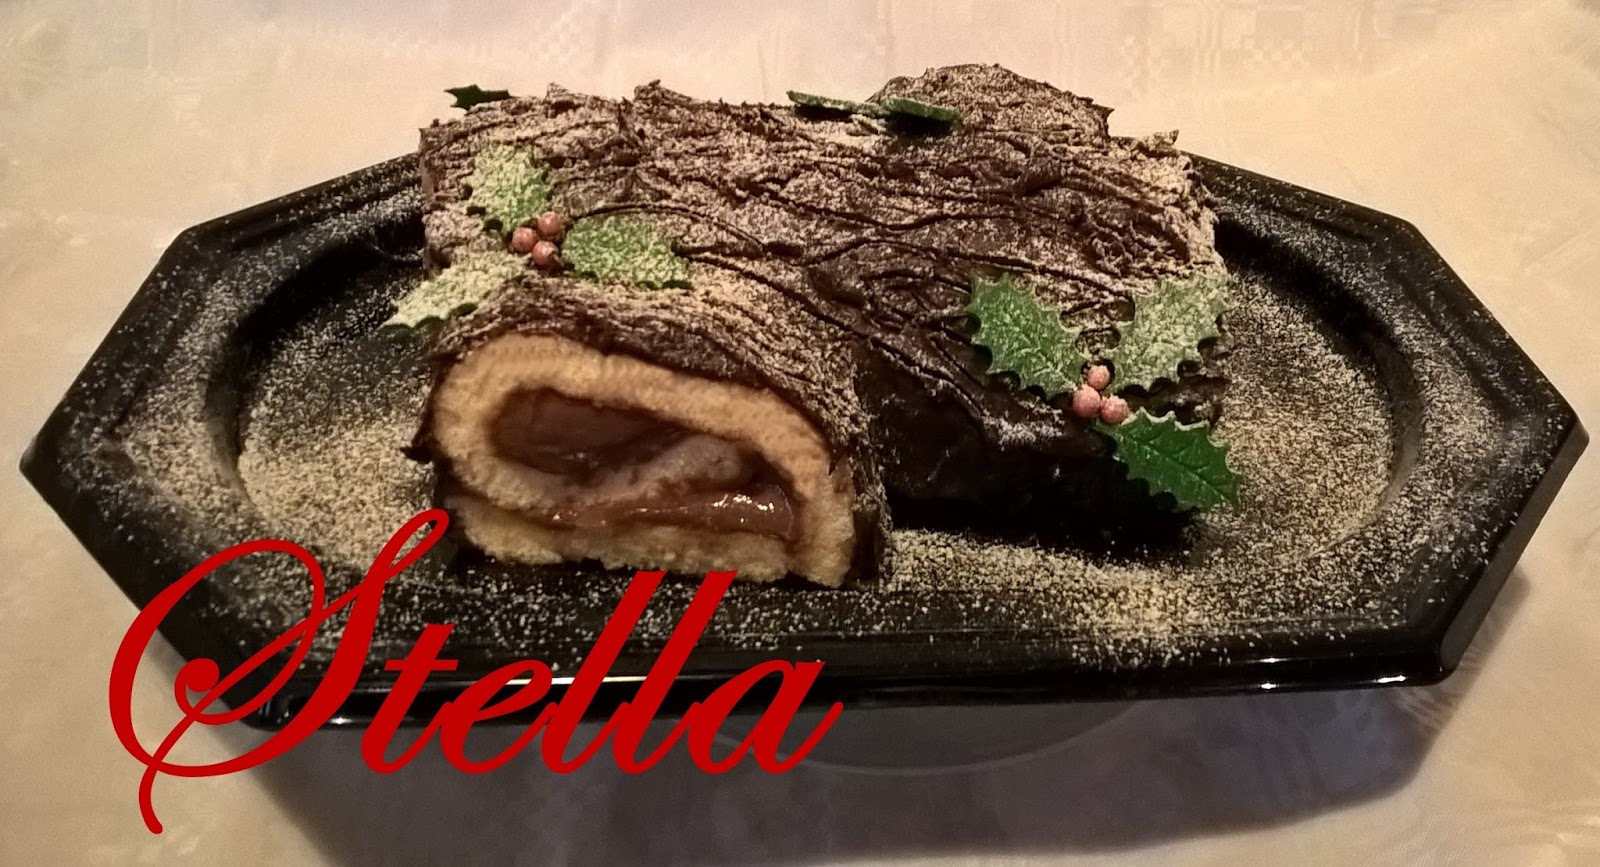 Tronchetto Di Natale Per Celiaci.Il Blog Di Stella Tronchetto Di Natale Senza Glutine Gluten Free Yule Log Cake